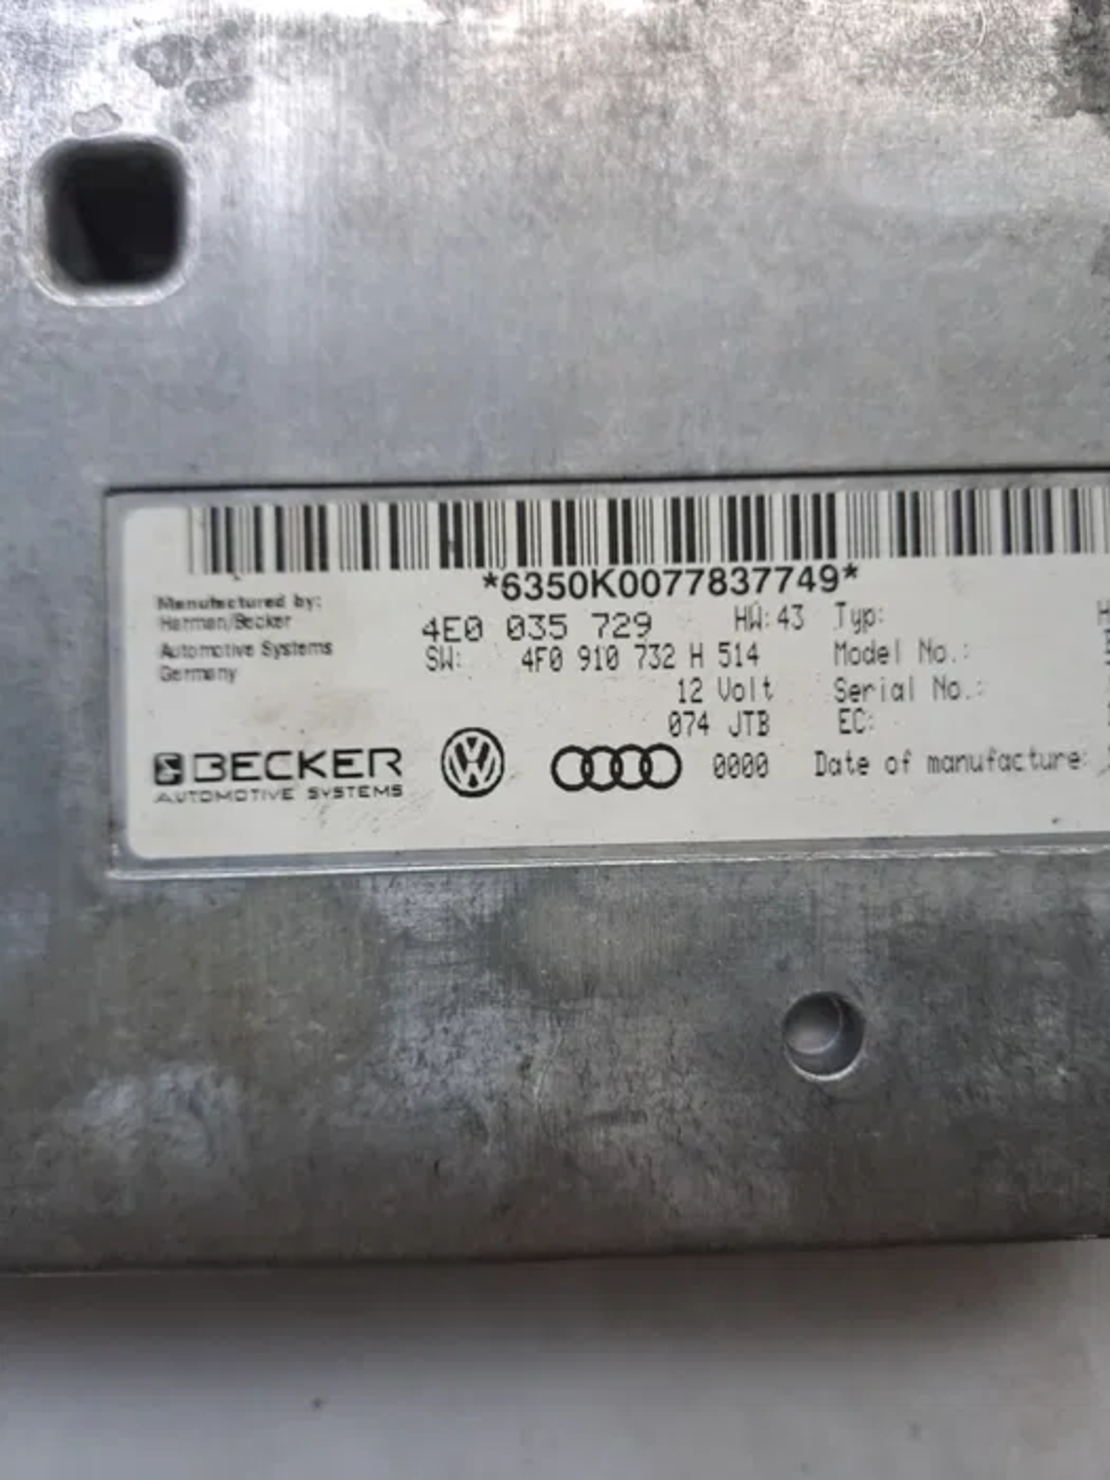 Audi MMI модул, Audi A6 C6 4F 3.0 233 ASB 4F0 910 732 H